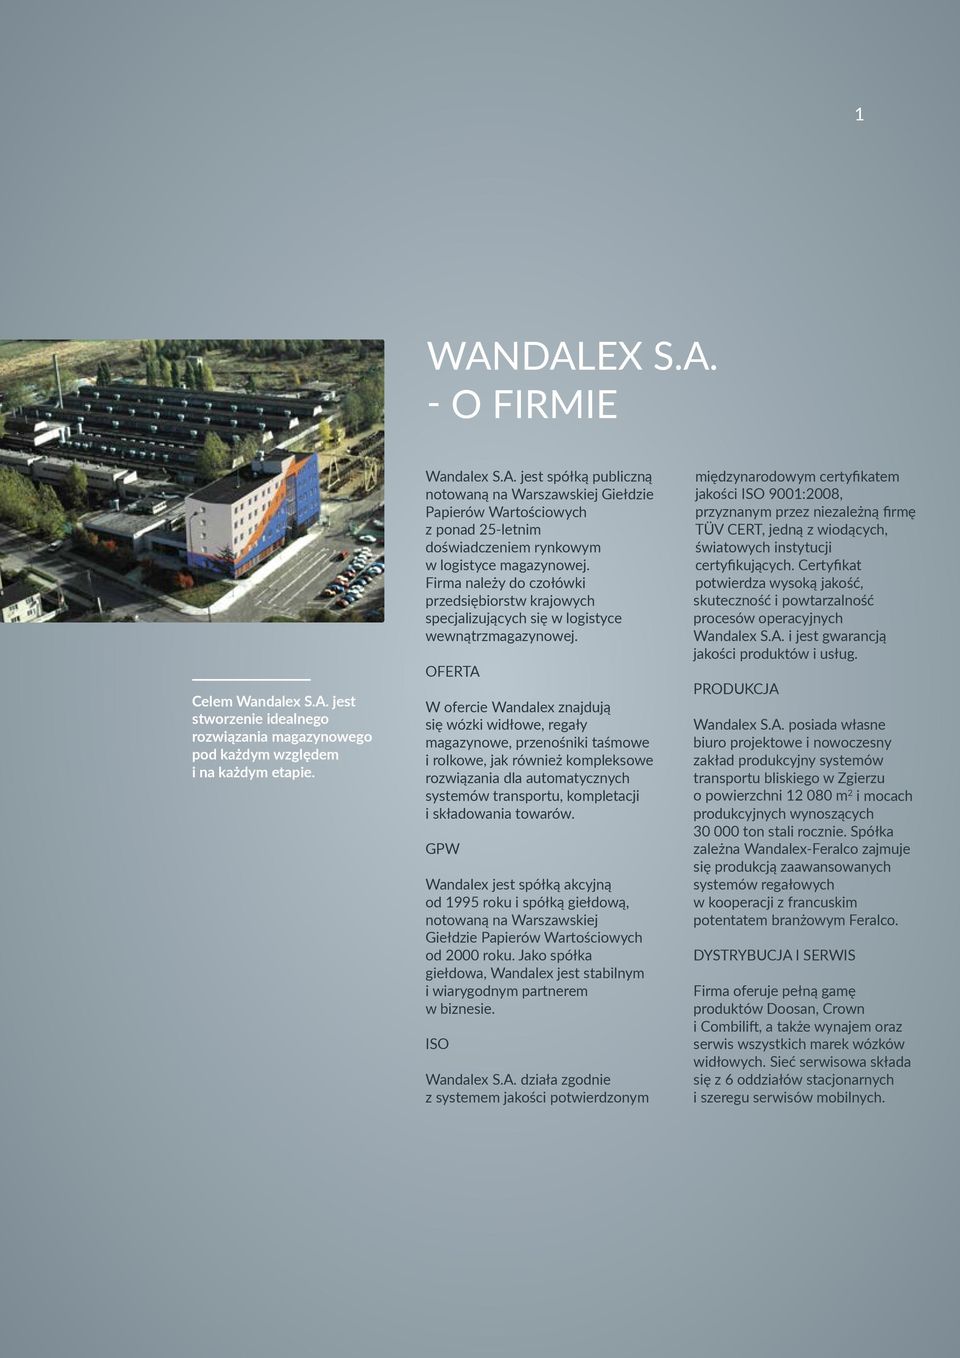 OFERTA W ofercie Wandalex znajdują się wózki widłowe, regały magazynowe, przenośniki taśmowe i rolkowe, jak również kompleksowe rozwiązania dla automatycznych systemów transportu, kompletacji i